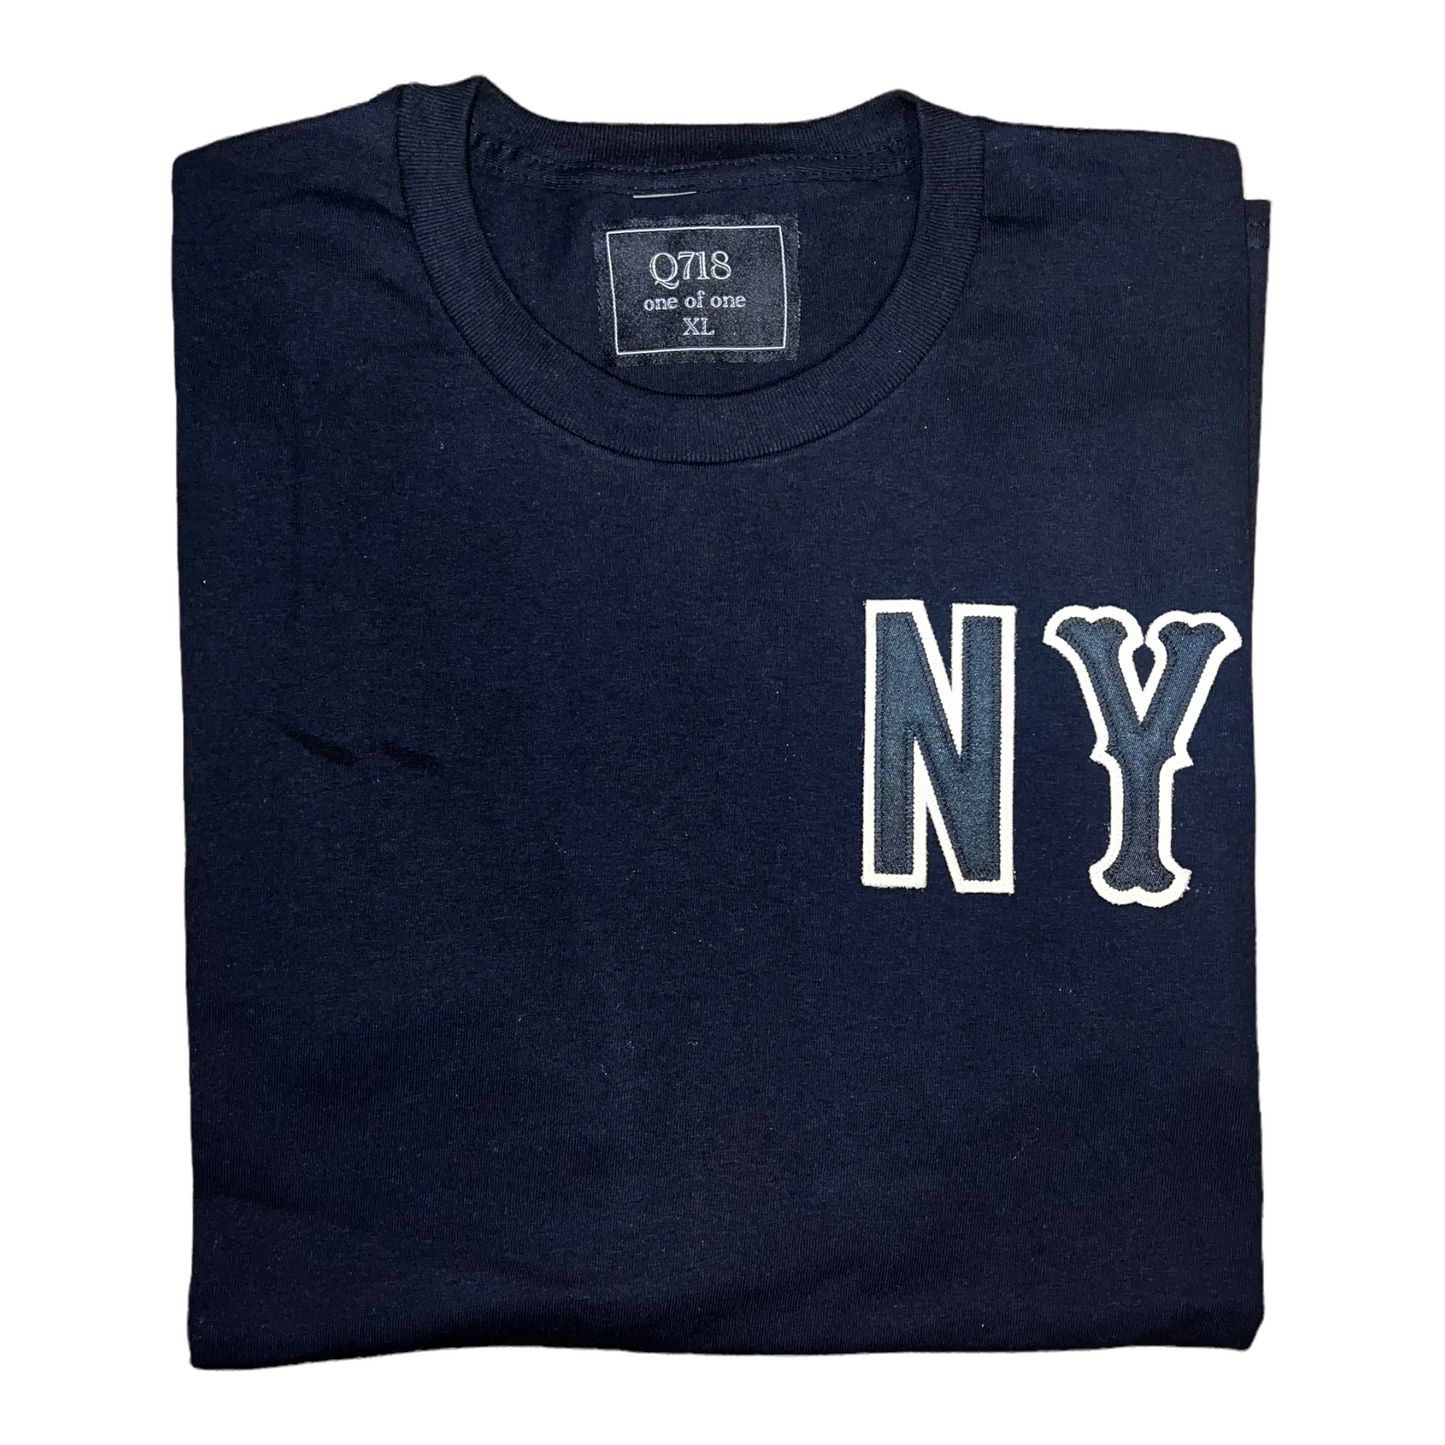 All City NY T-Shirt